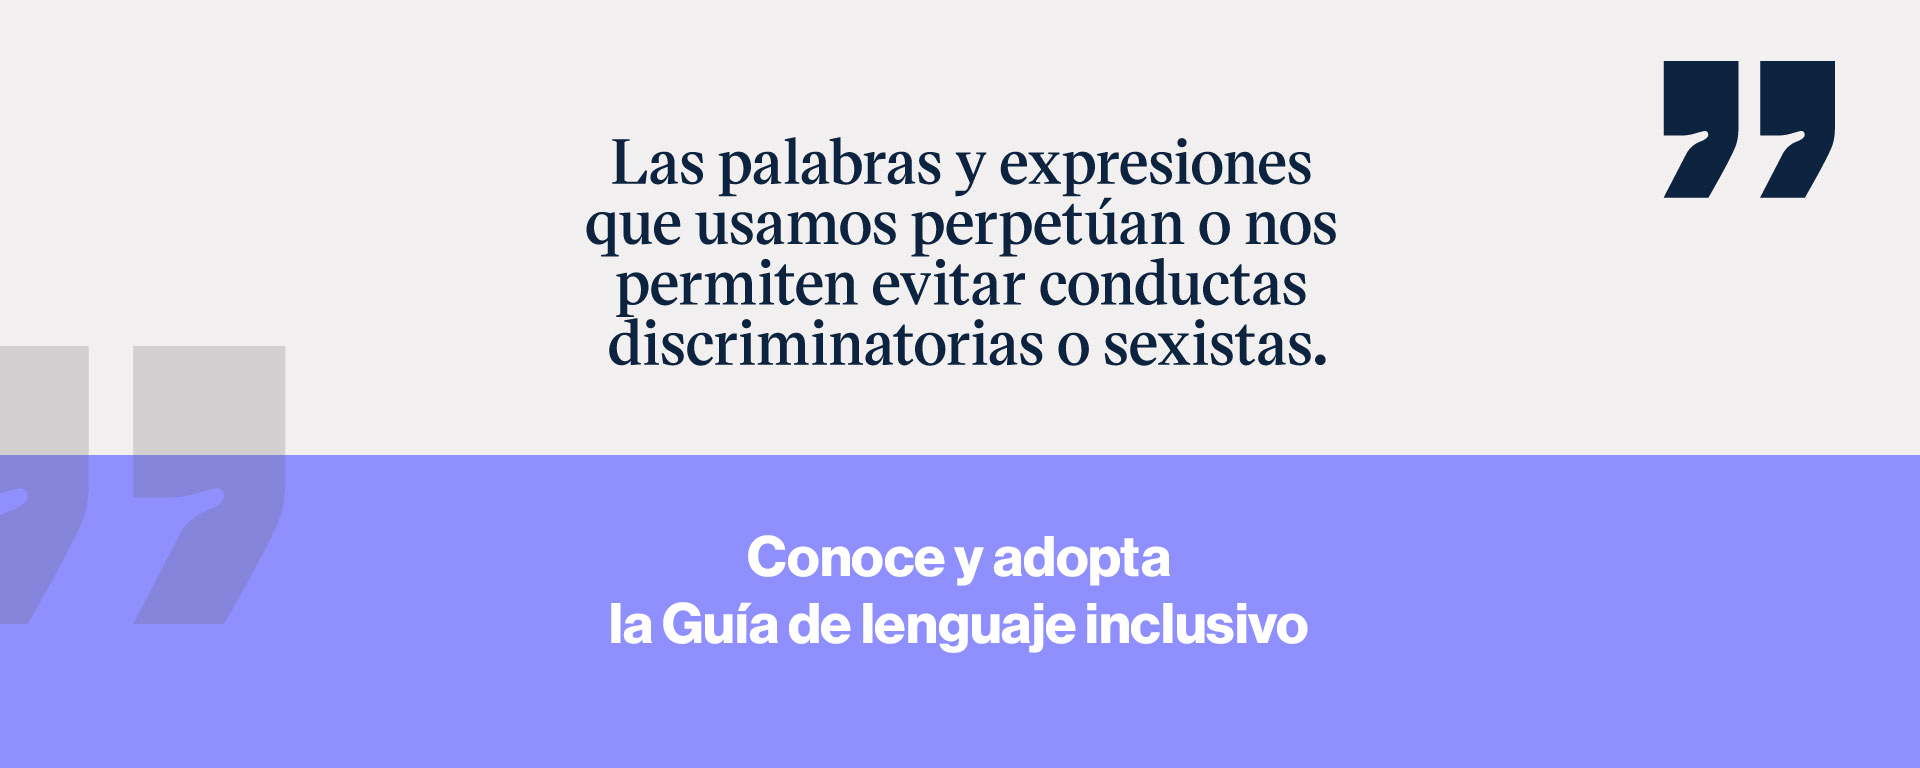 Guía de lenguaje inclusivo del Centro de Reconocimiento de la Dignidad Humana del Tec de Monterrey